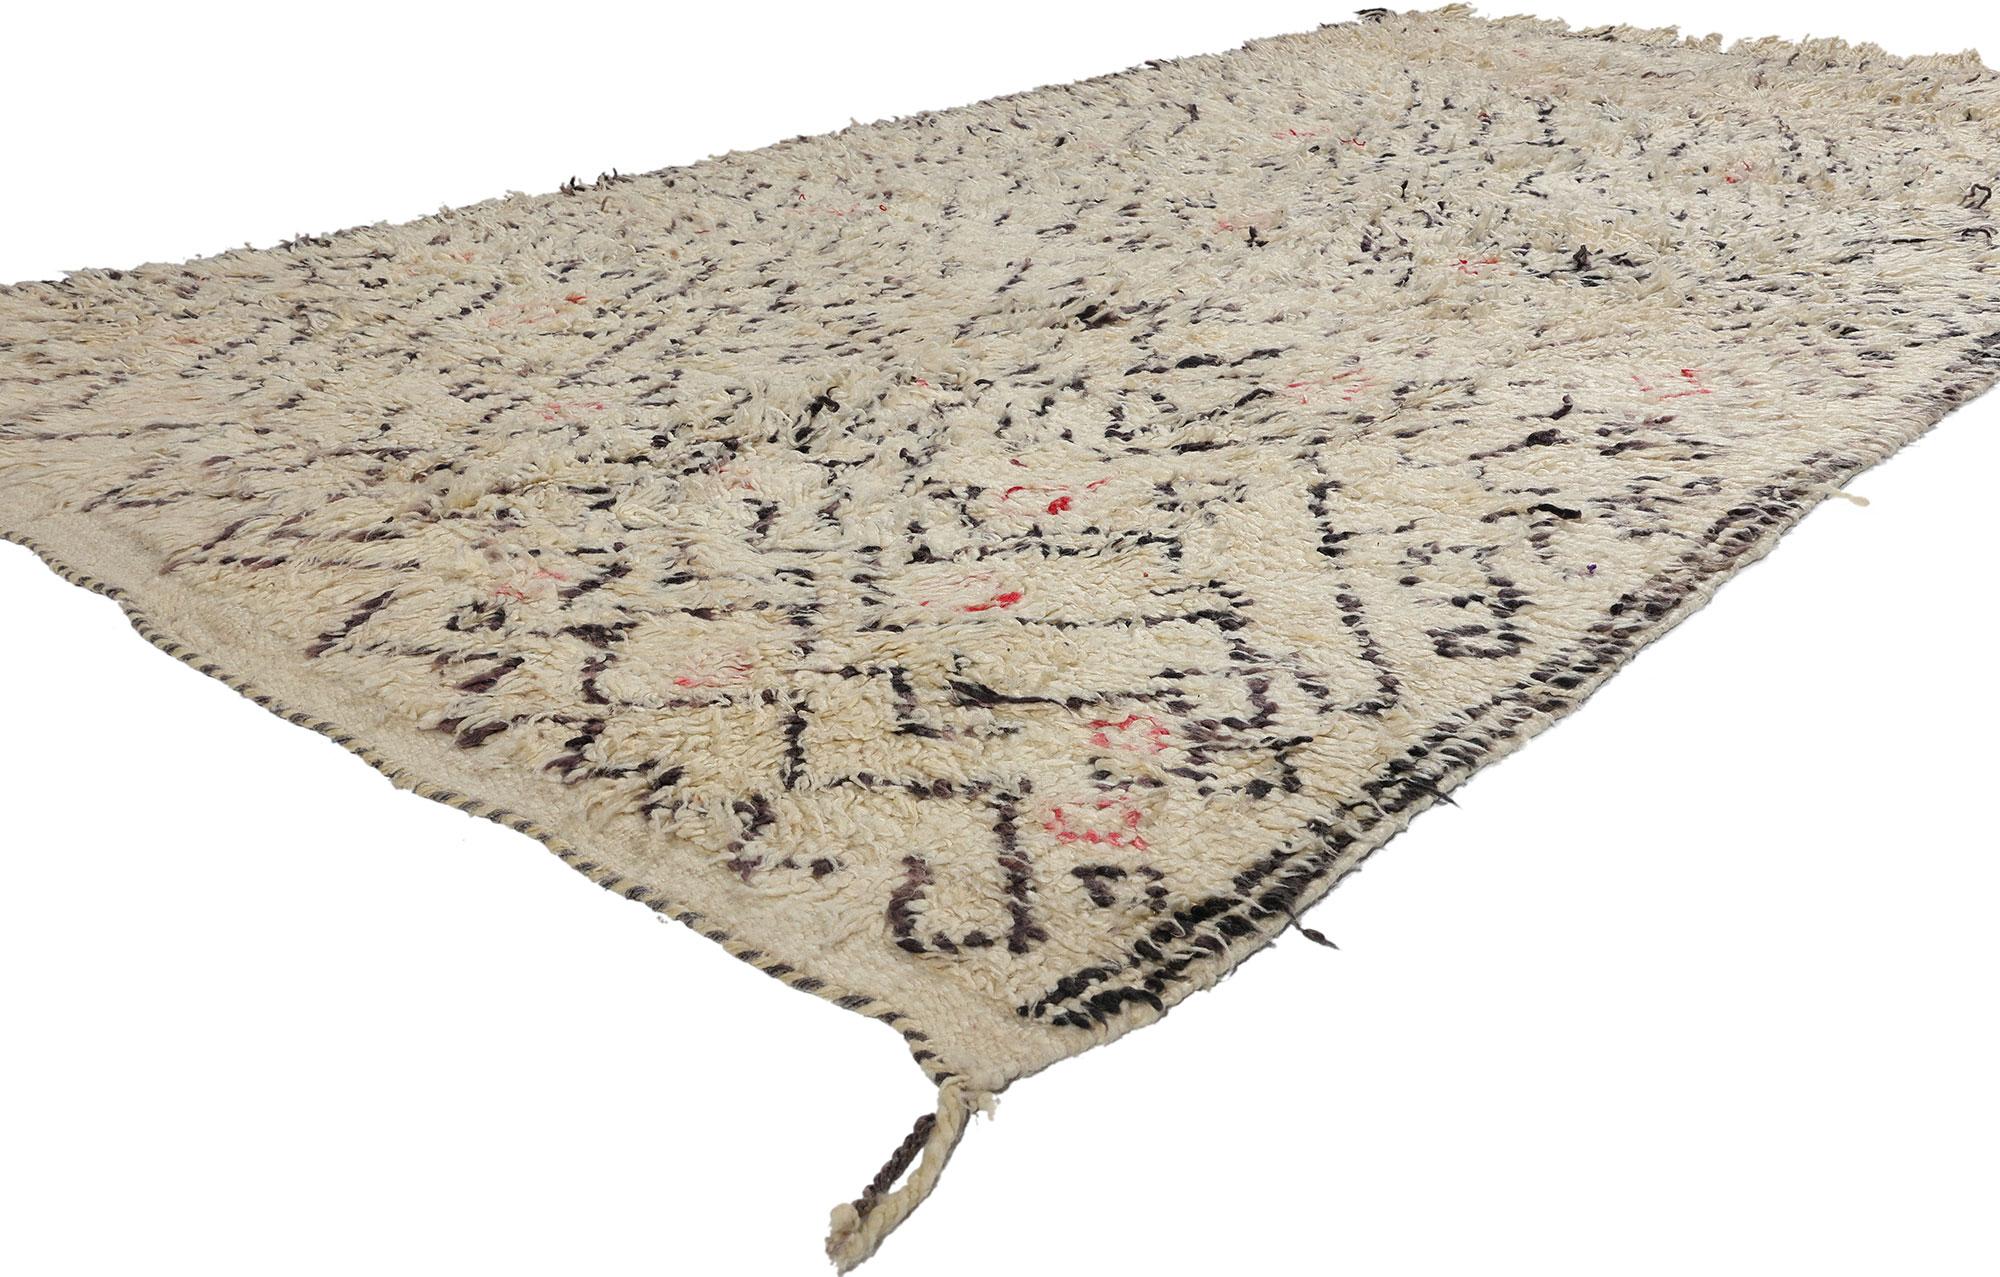 21724 Vintage Marokkanischer Azilal-Teppich, 04'09 x 09'00. Neutrale marokkanische Azilal-Teppiche, die von Berberhandwerkern in der Azilal-Region in Marokko handgewebt werden, zeichnen sich durch gedämpfte Töne wie Beige, Creme, Taupe und Grau aus